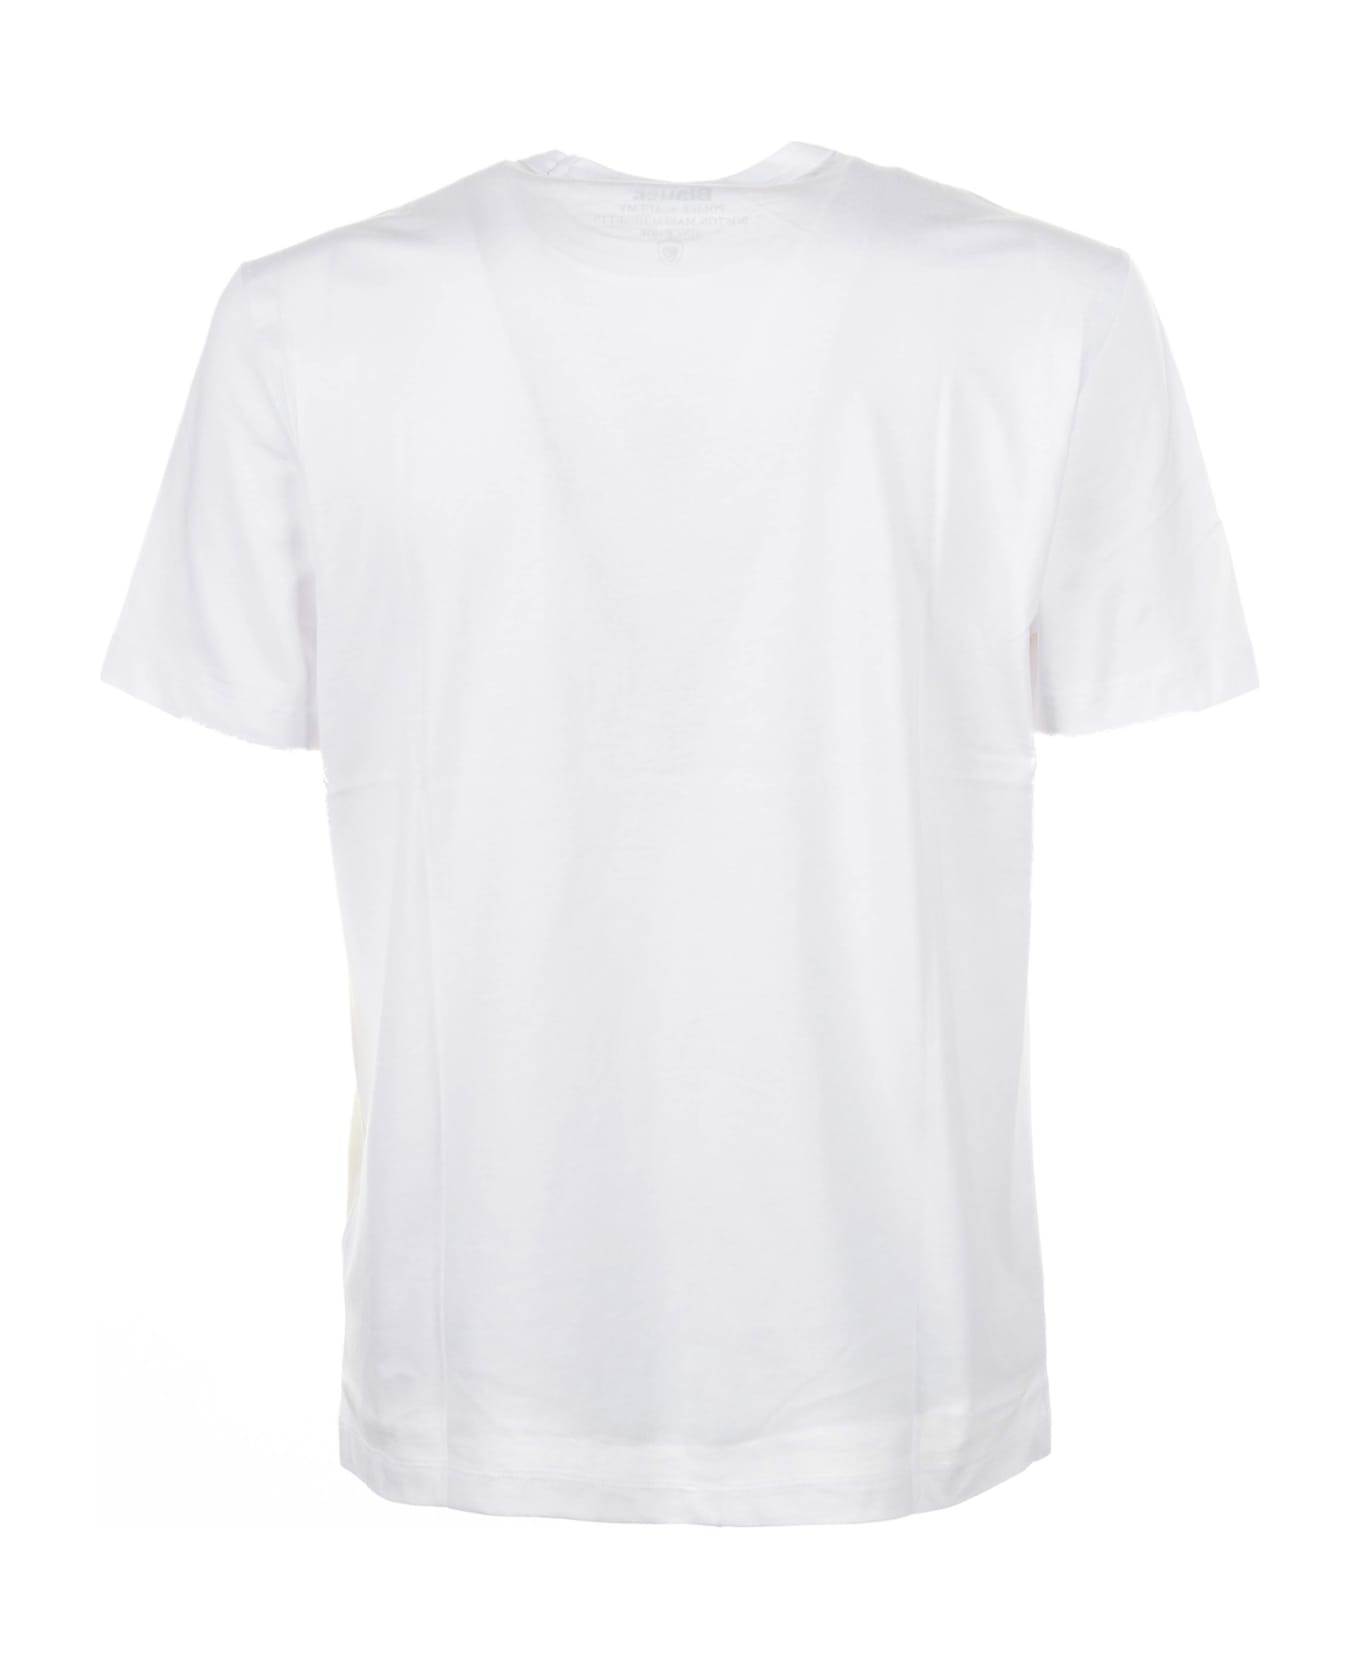 Blauer White Cotton T-shirt - BIANCO OTTICO